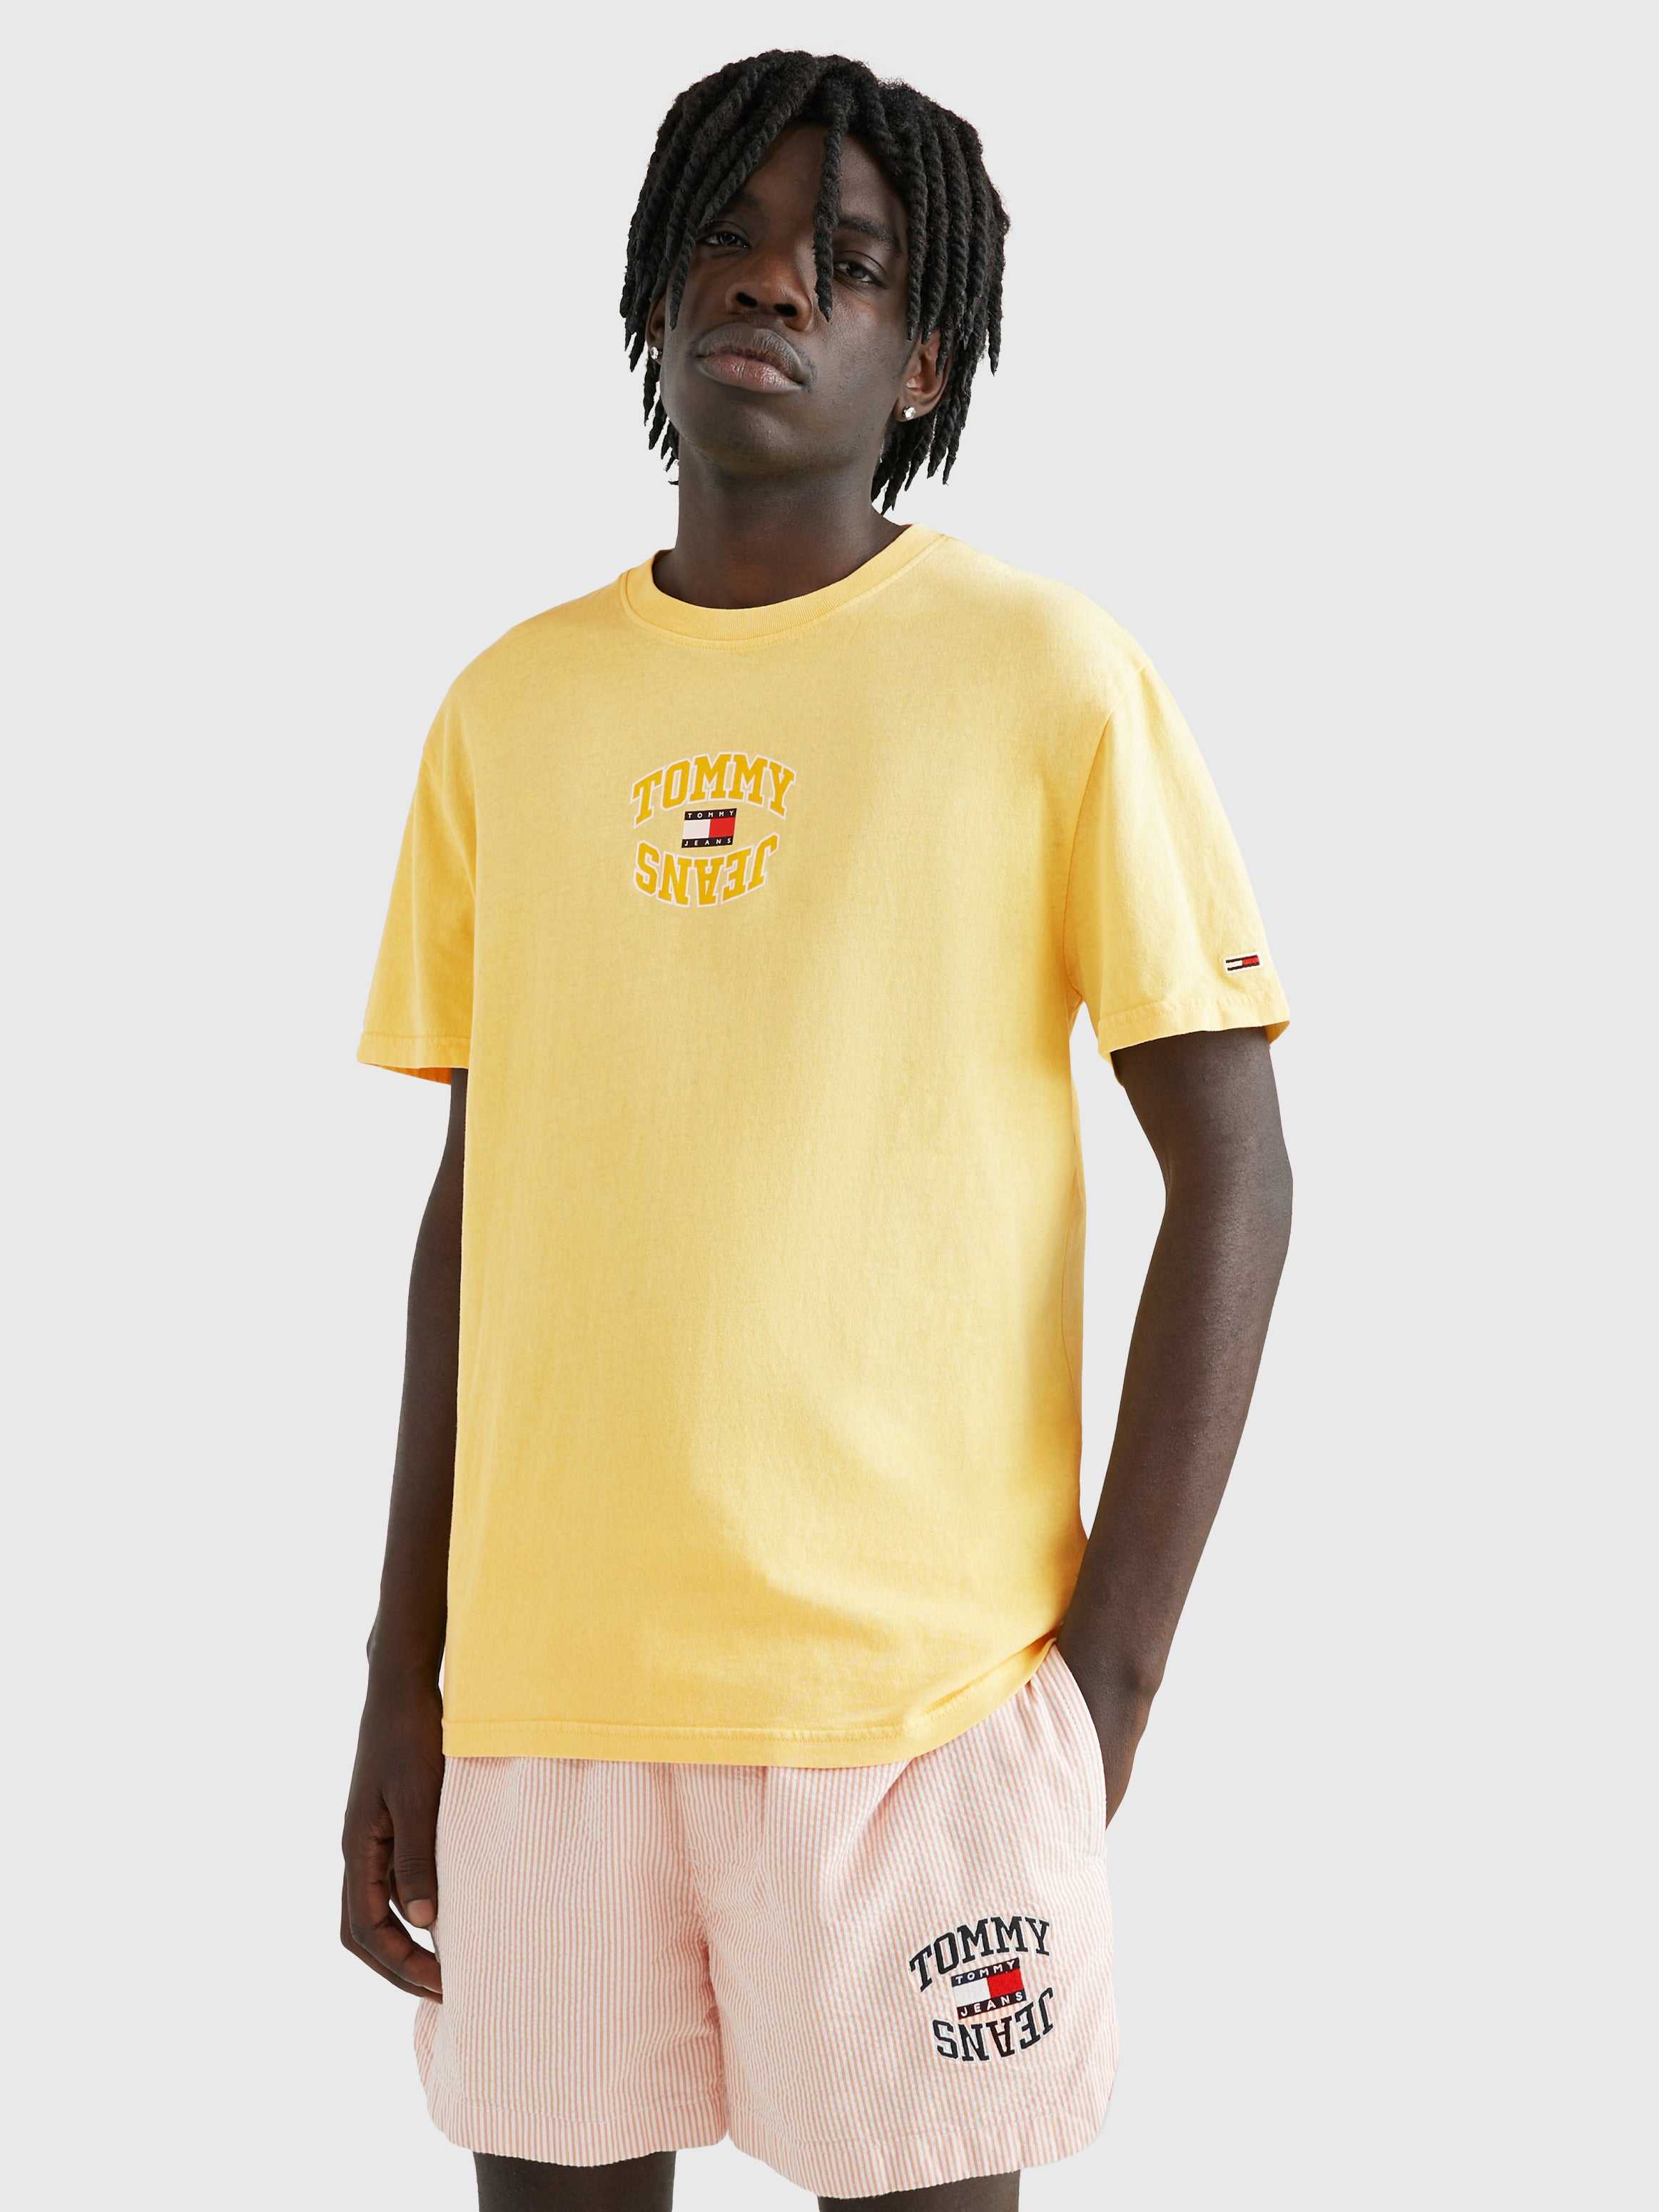 Tommy Hilfiger Mens Mirror Logo Classic Fit T-Shirt Lemon Zest DM16227 720